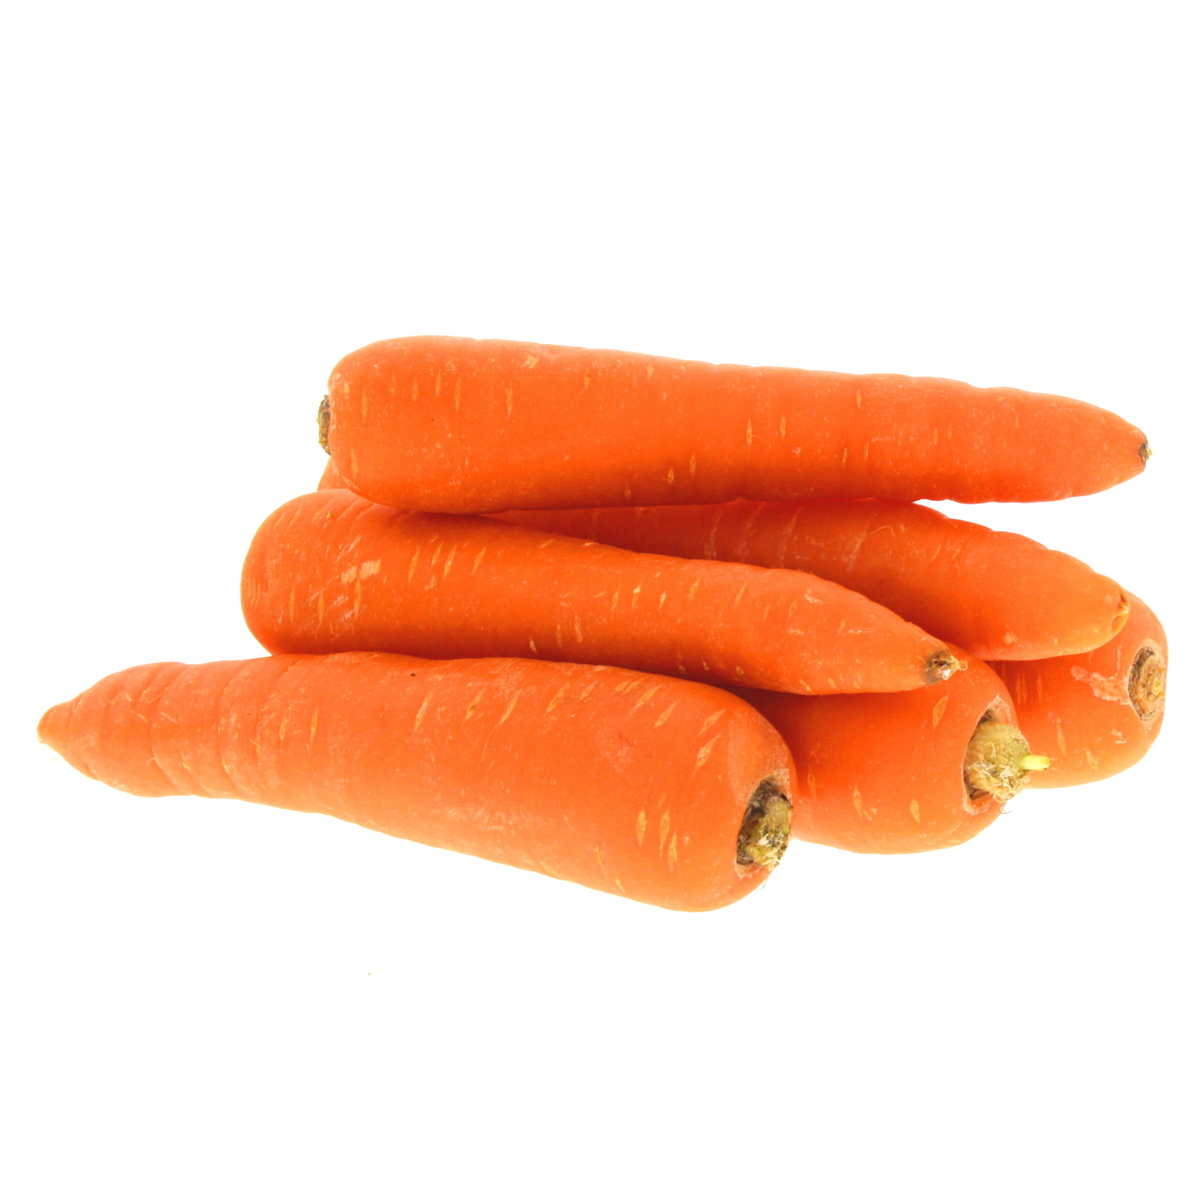 Buy Organic Carrot 500g Approx. Weight Online - Lulu Hypermarket UAE